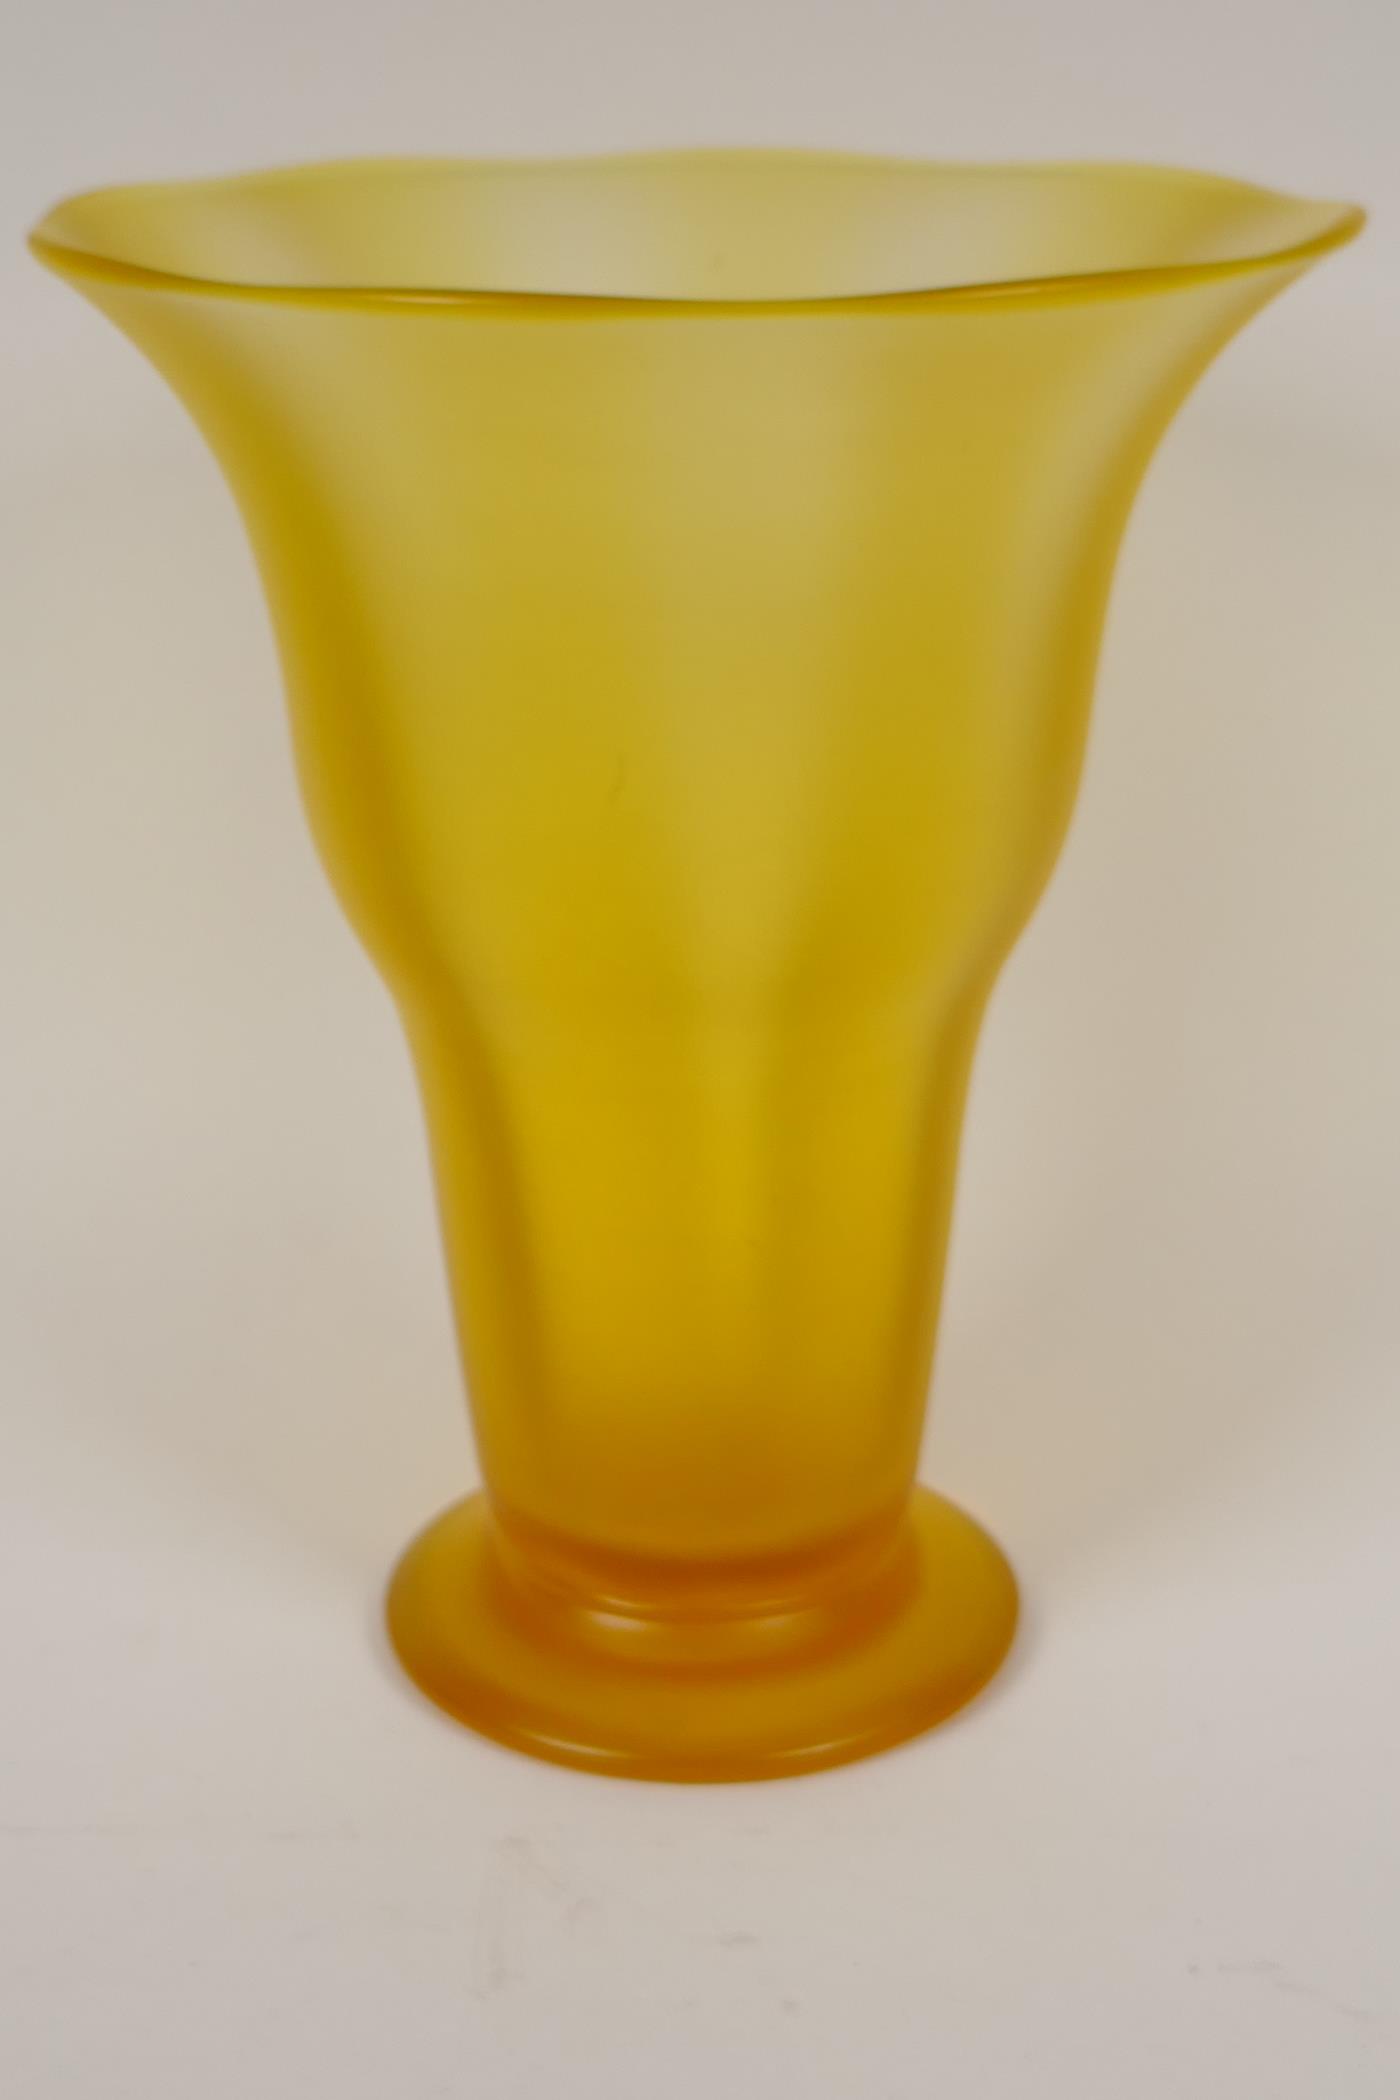 A Thomas Webb uranium vase, 9½" high - Image 3 of 3